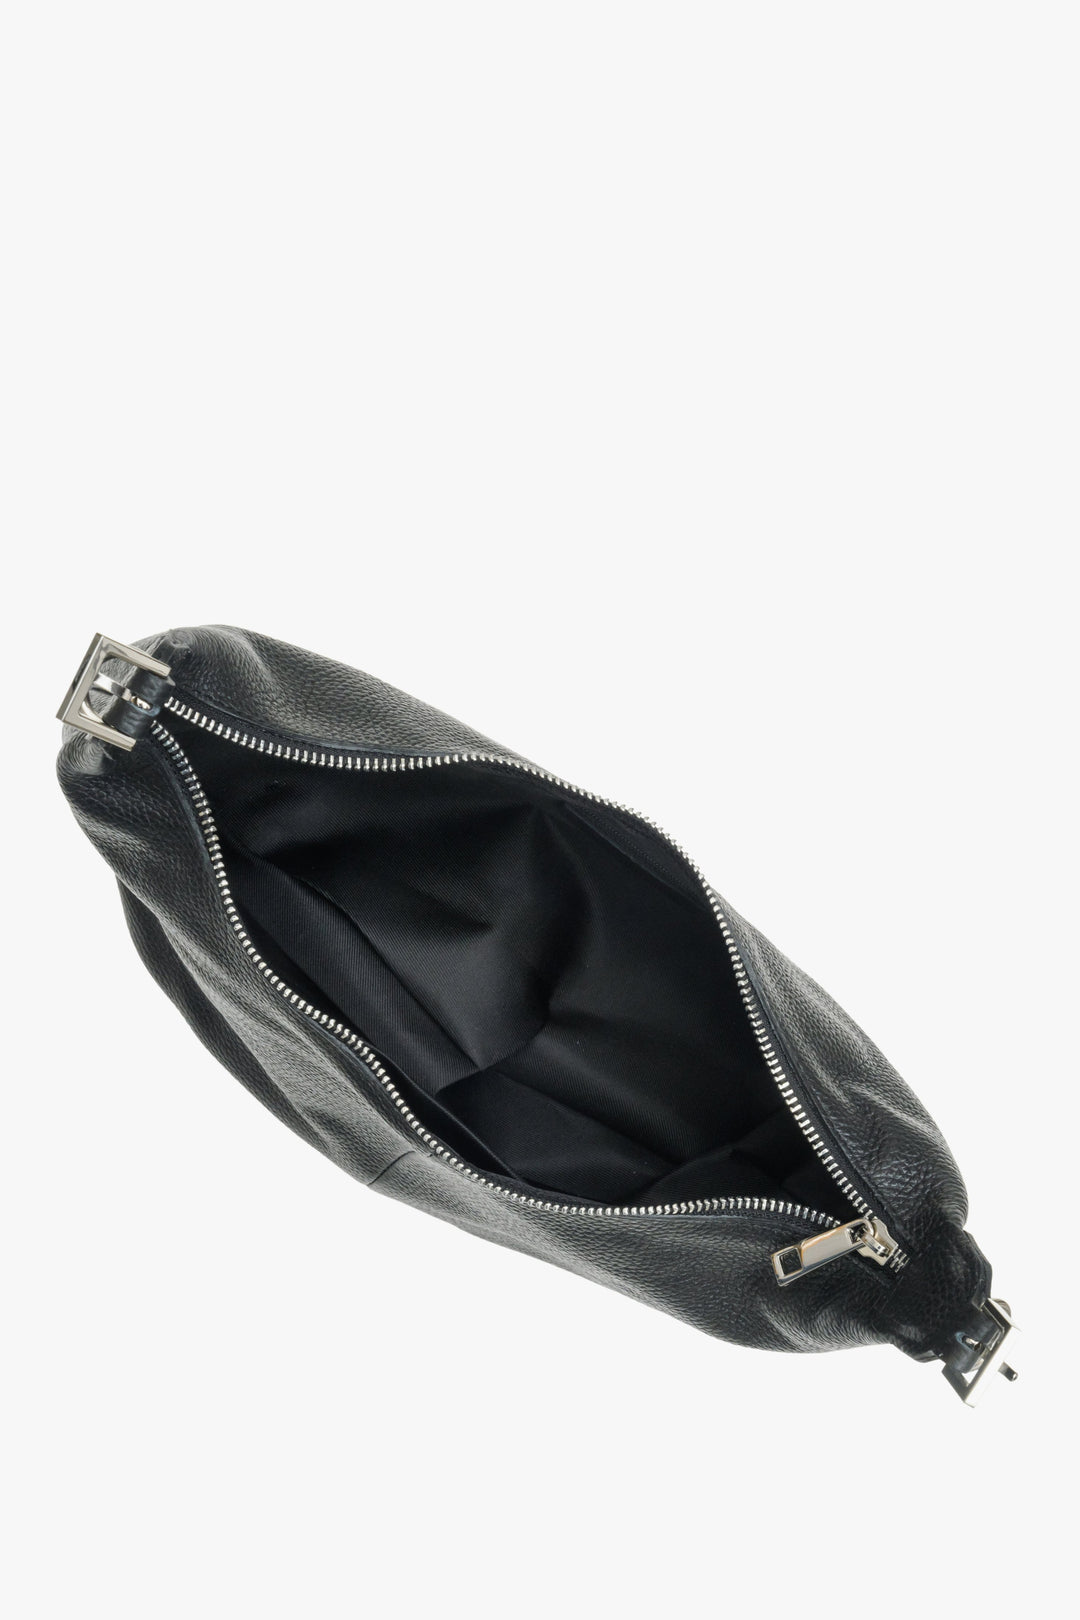 Women's black leather baguette bag by Estro.